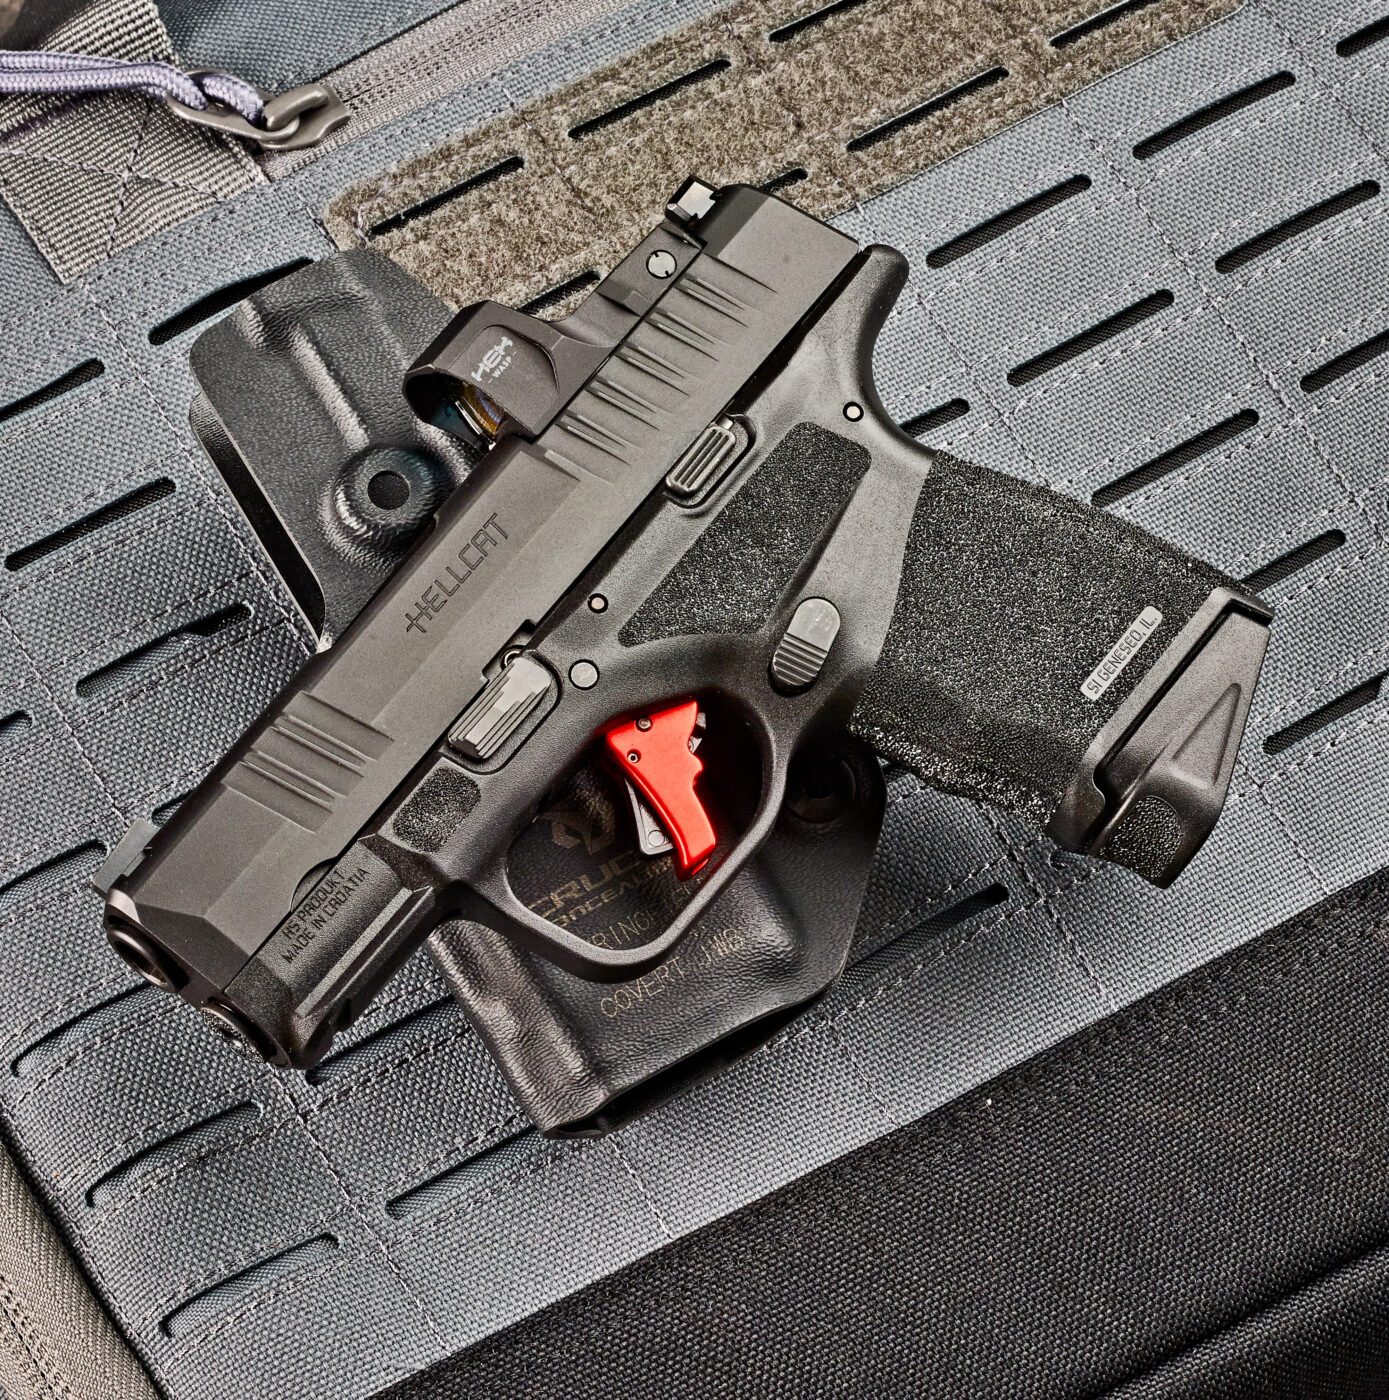 LTT custom Hellcat pistol